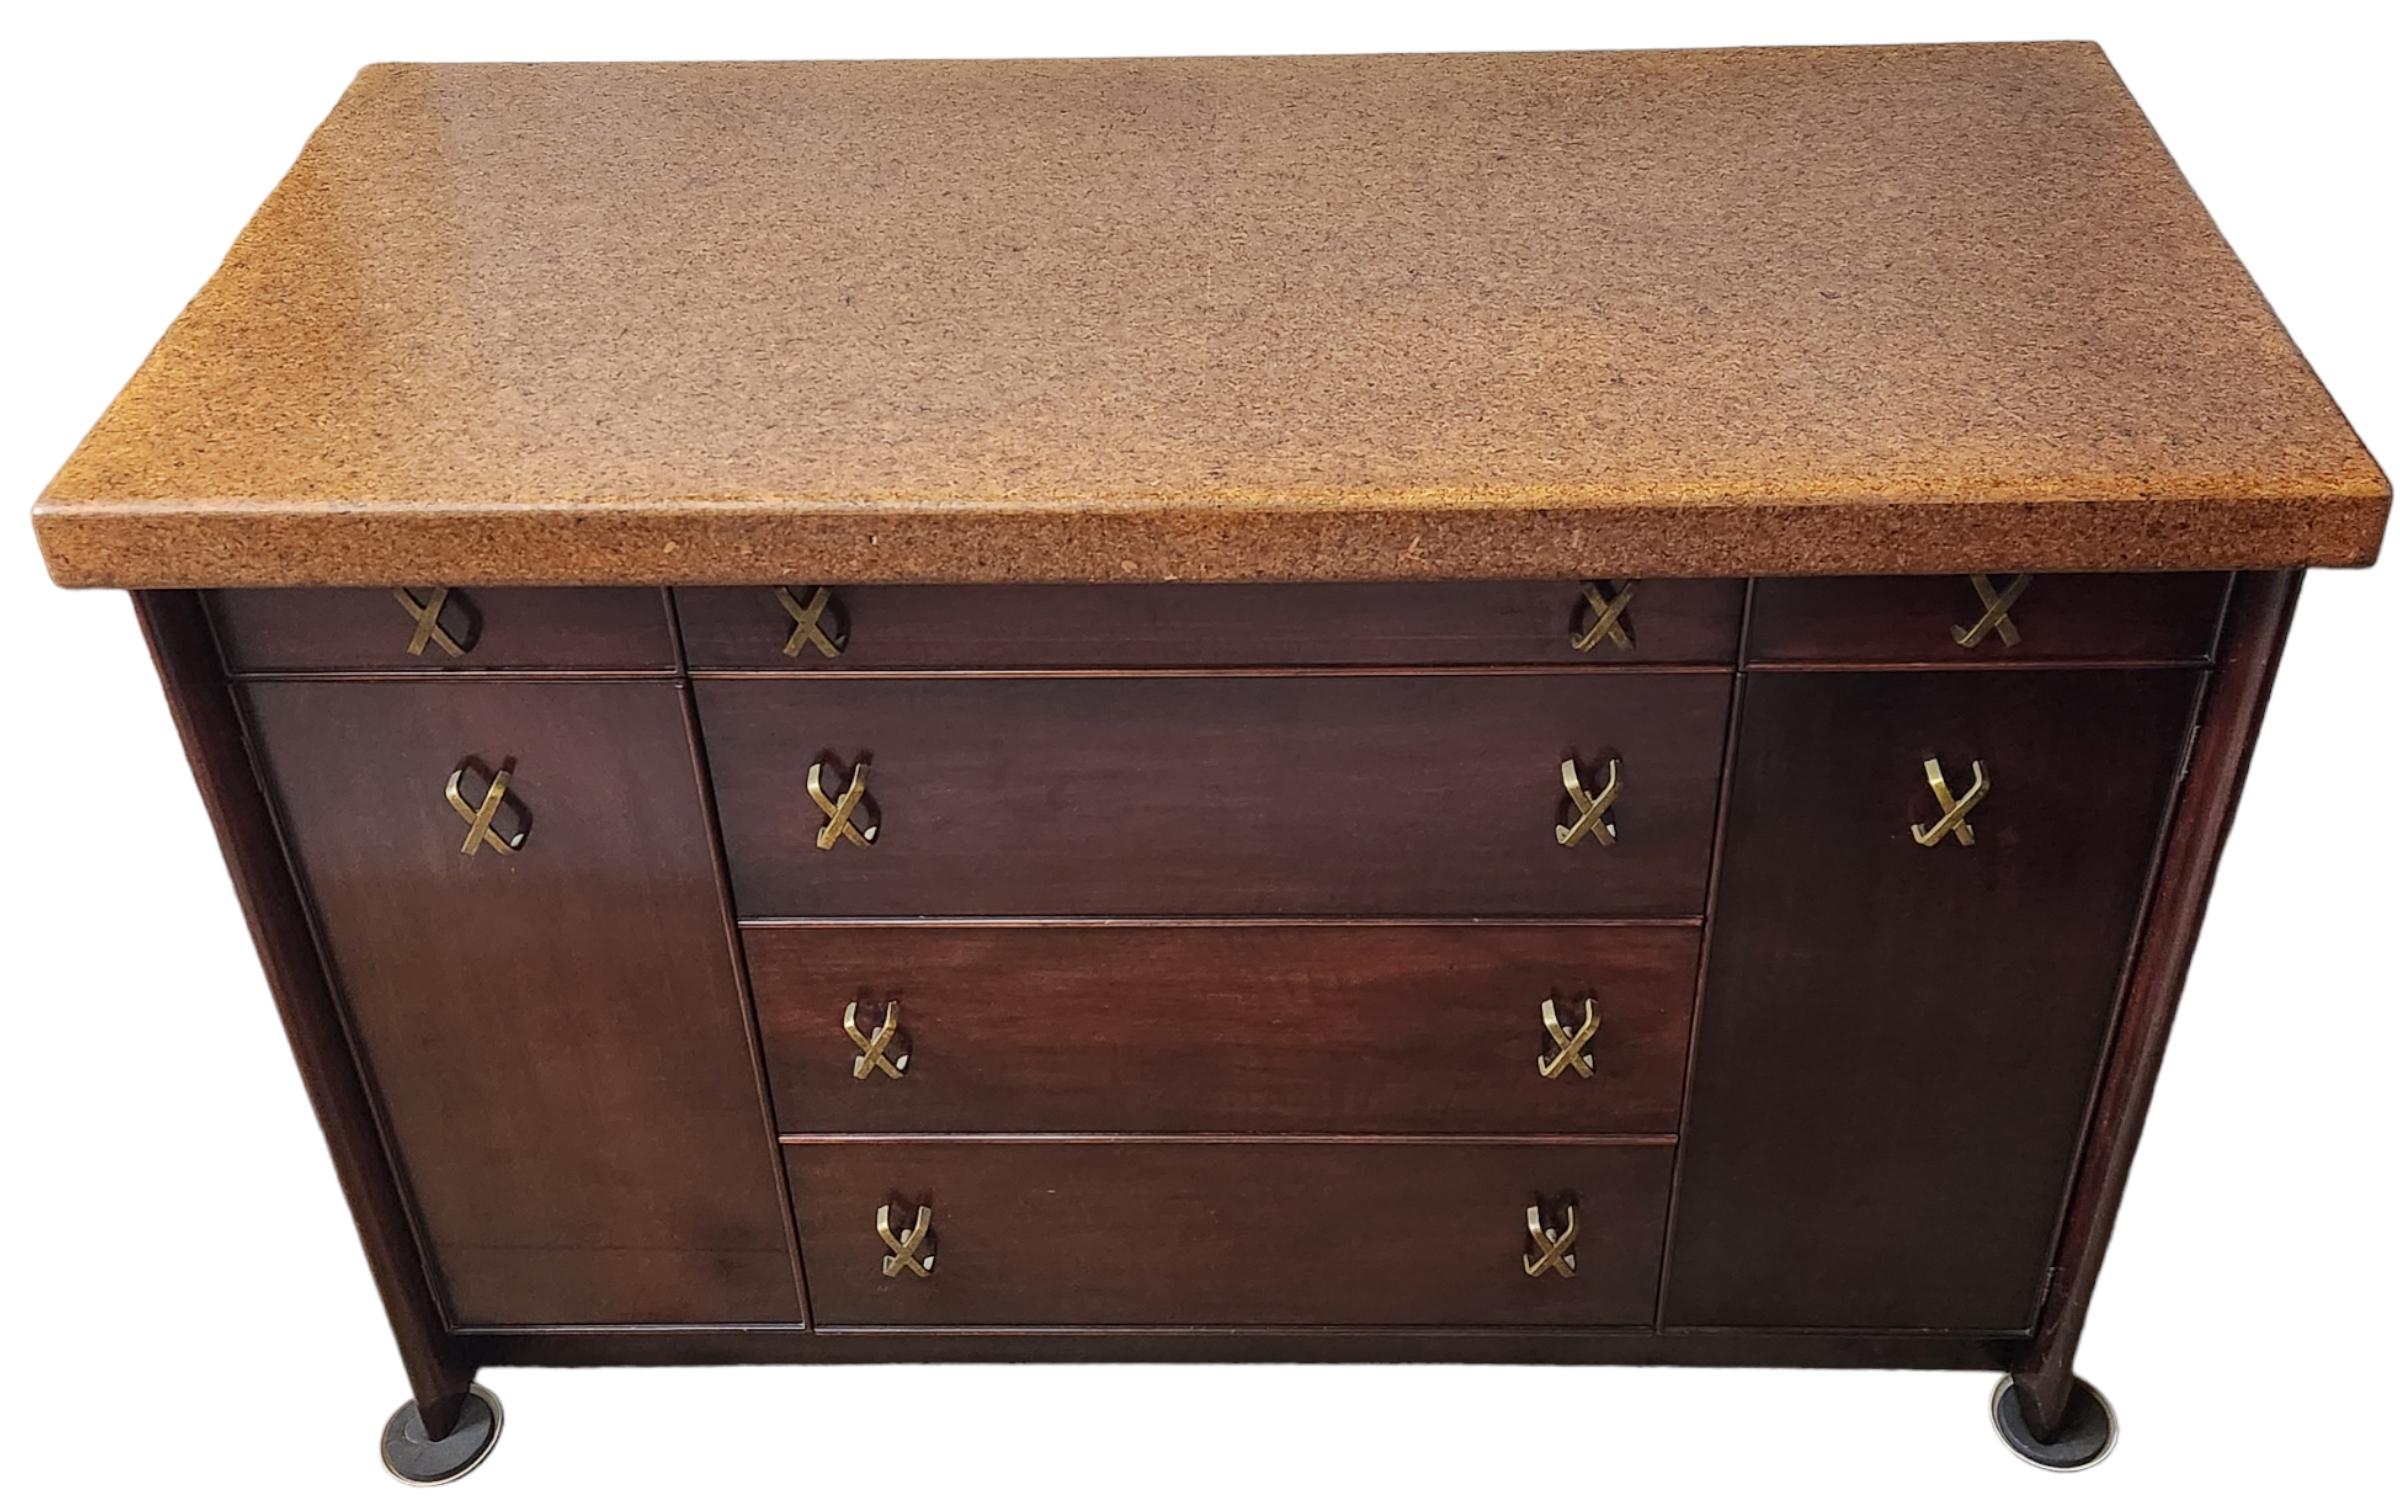 Paul Frankl-Anrichte mit zwei Seitentüren und sechs Schubladen, hergestellt von der Johnson Furniture Company in Grand Rapids, Michigan, in den 1950er Jahren.
Korkenschrank aus rosenholzgebeiztem Ahorn, restauriert in sehr gutem Zustand.

